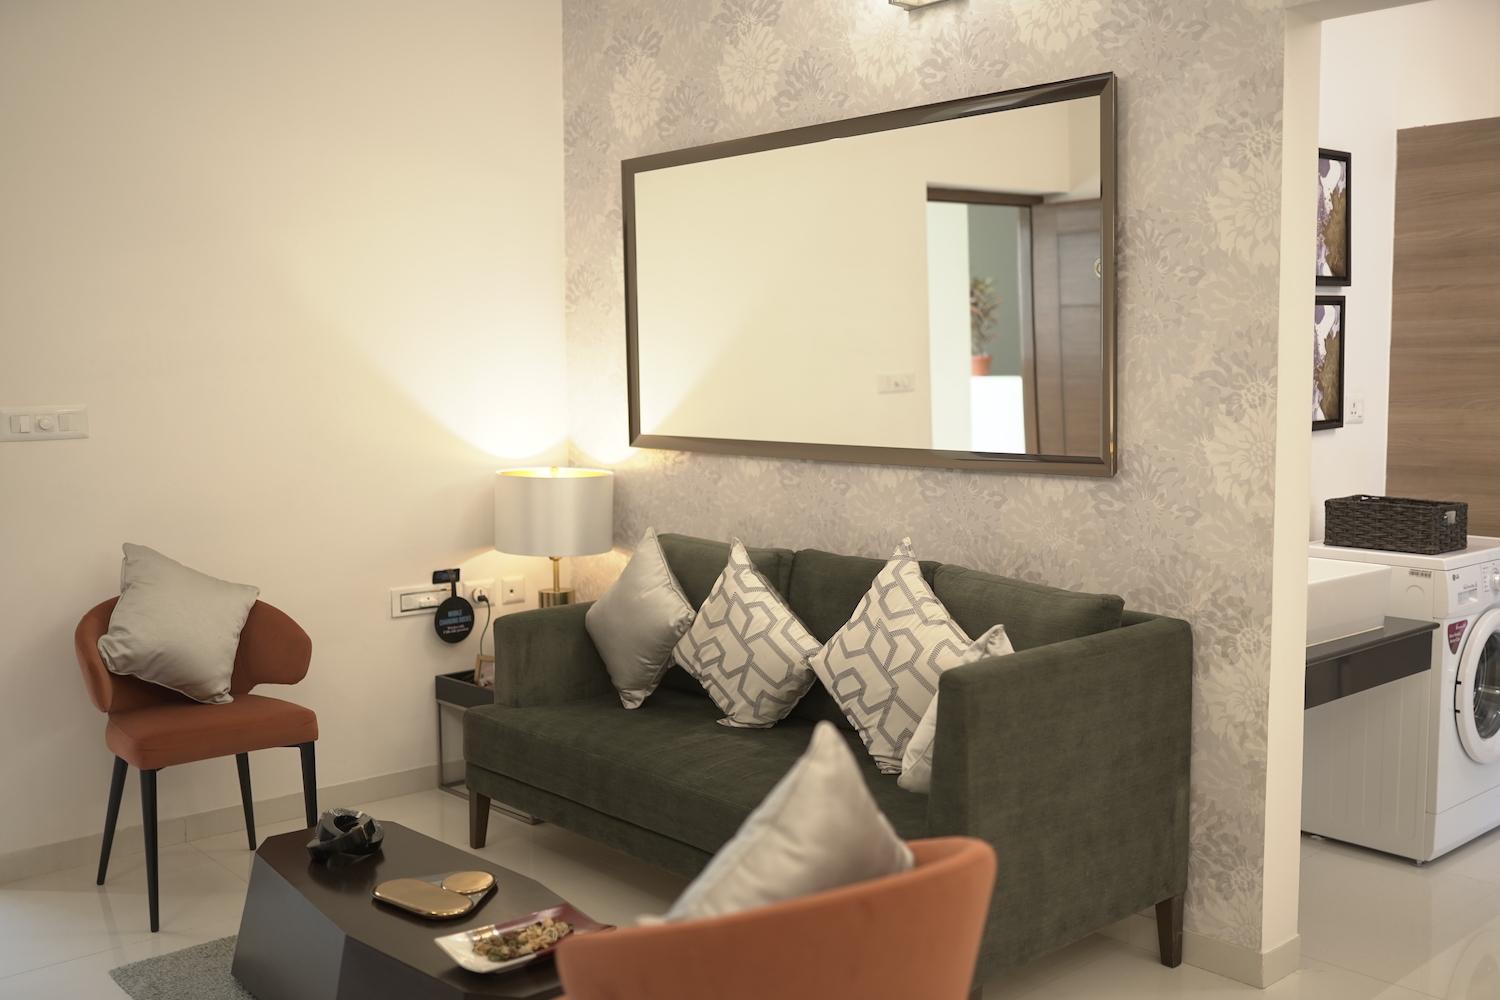 04 living room 1 - Premium Apartments by Casagrand in Perumbakkam - Sholinganallur